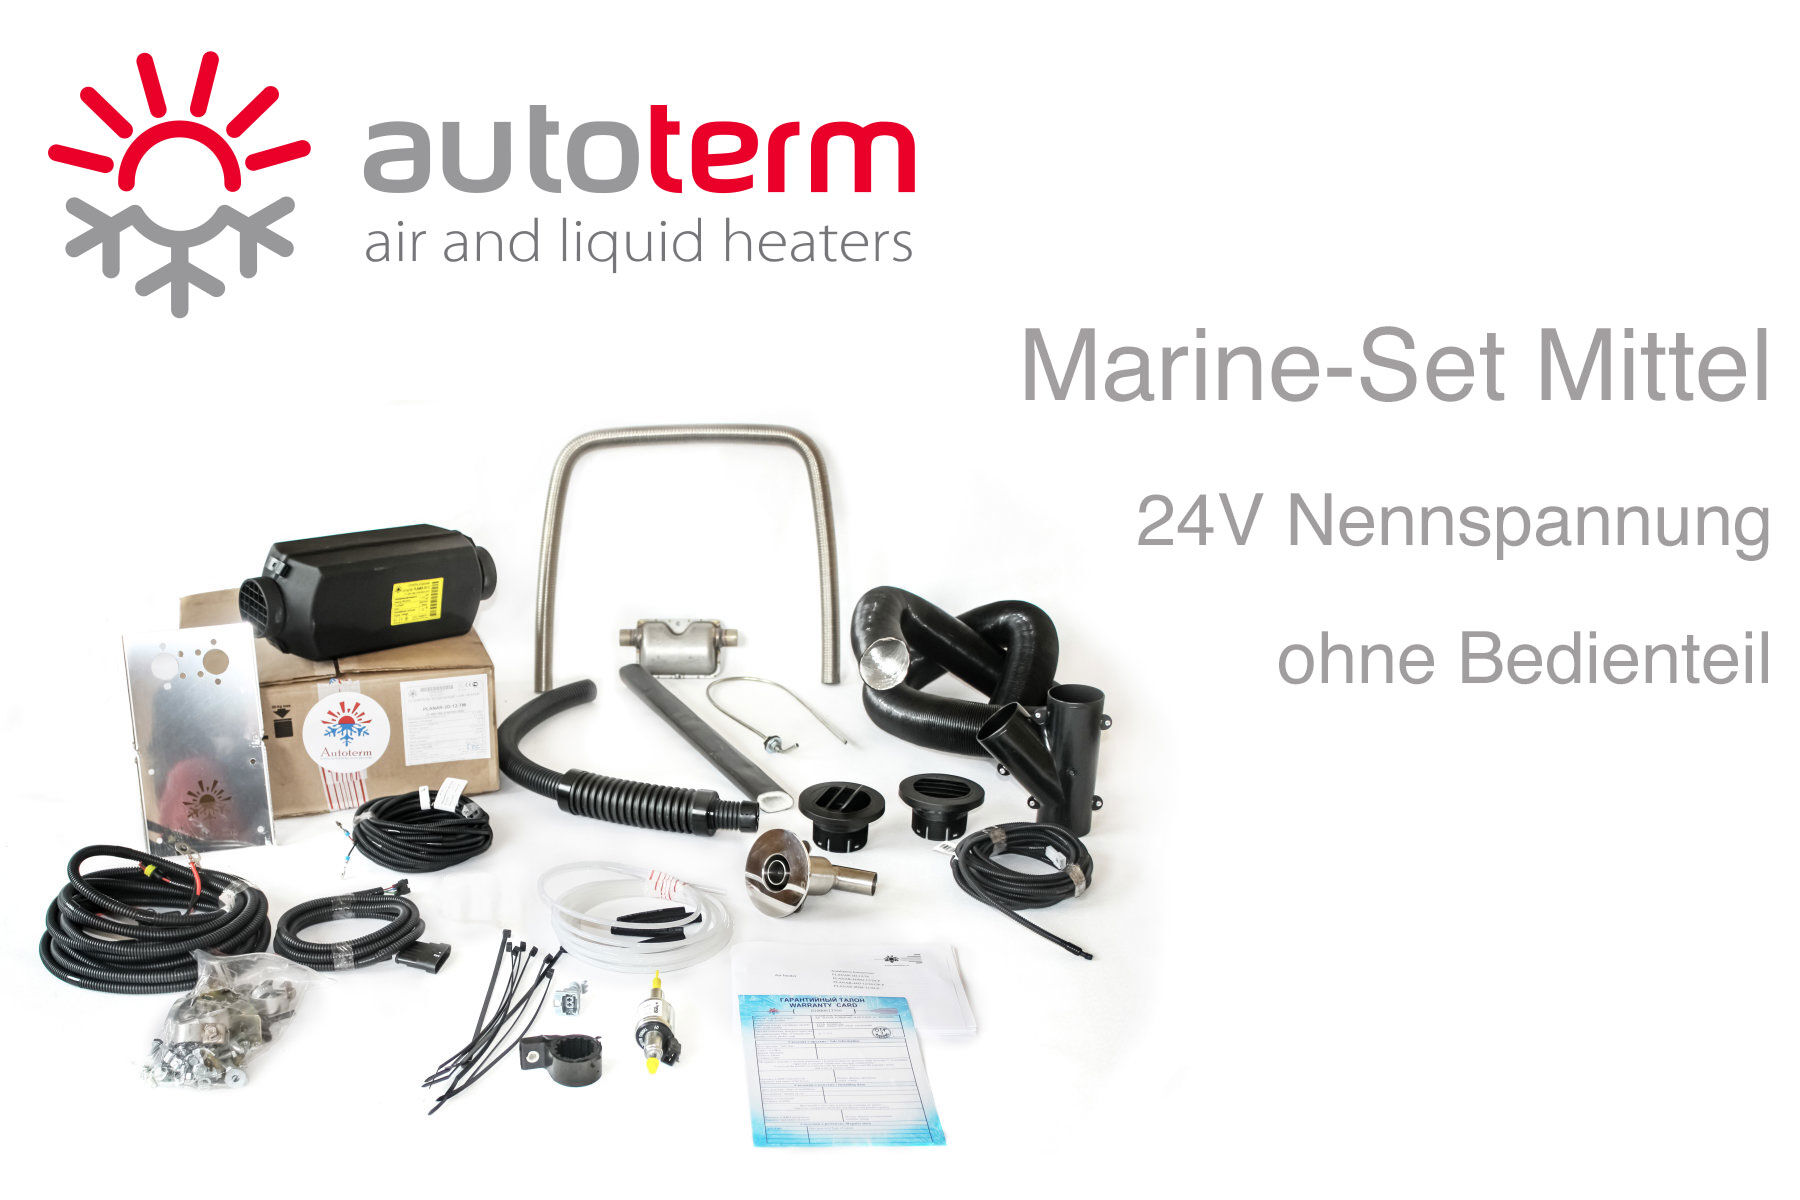 Autoterm Air 2D Diesel Warmluftheizung Marine Set Mittel, 24V, ohne  Bedienteil günstig online kaufen